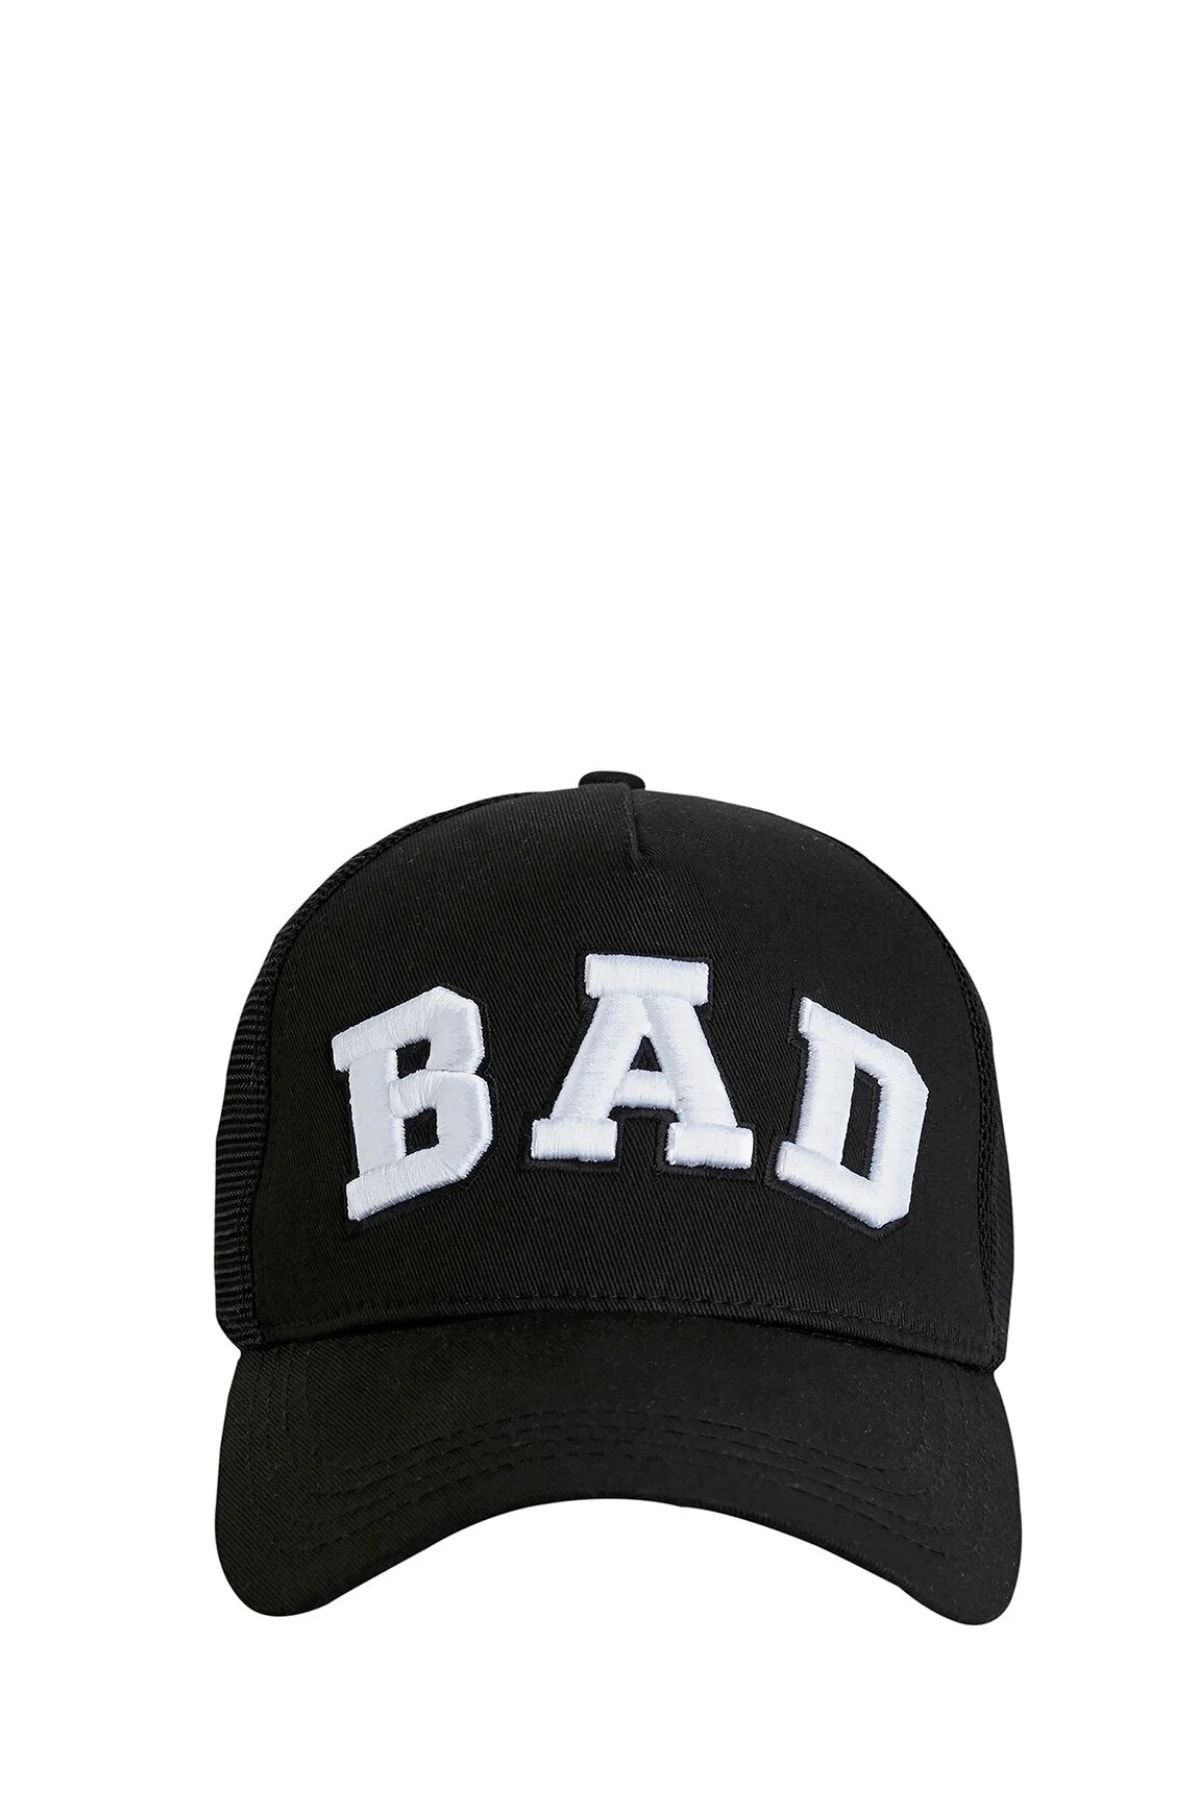 Bad Bear Bad Erkek Şapka 190242006-C01